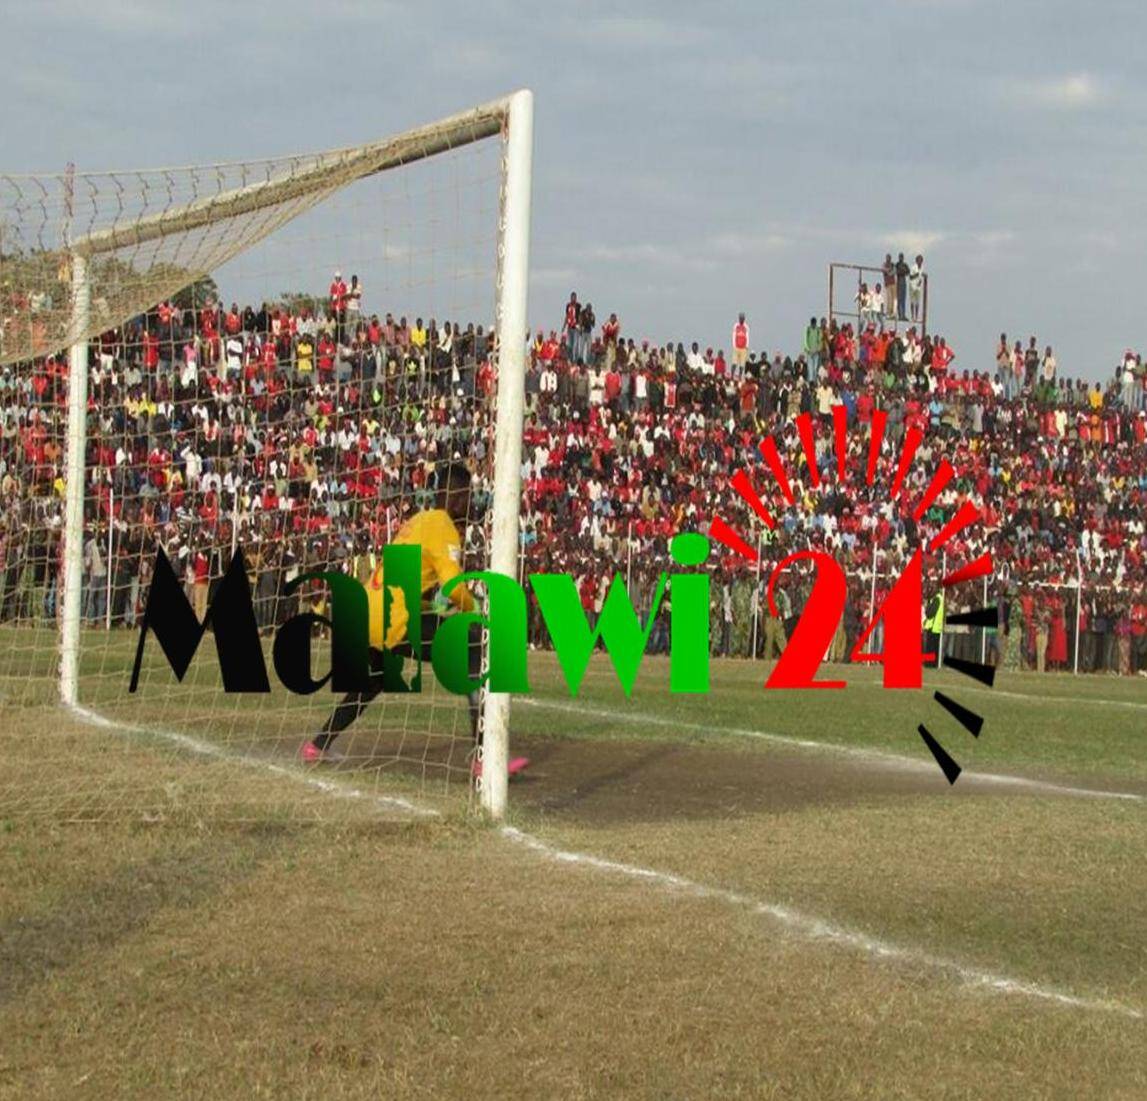 Kakhobwe in goals